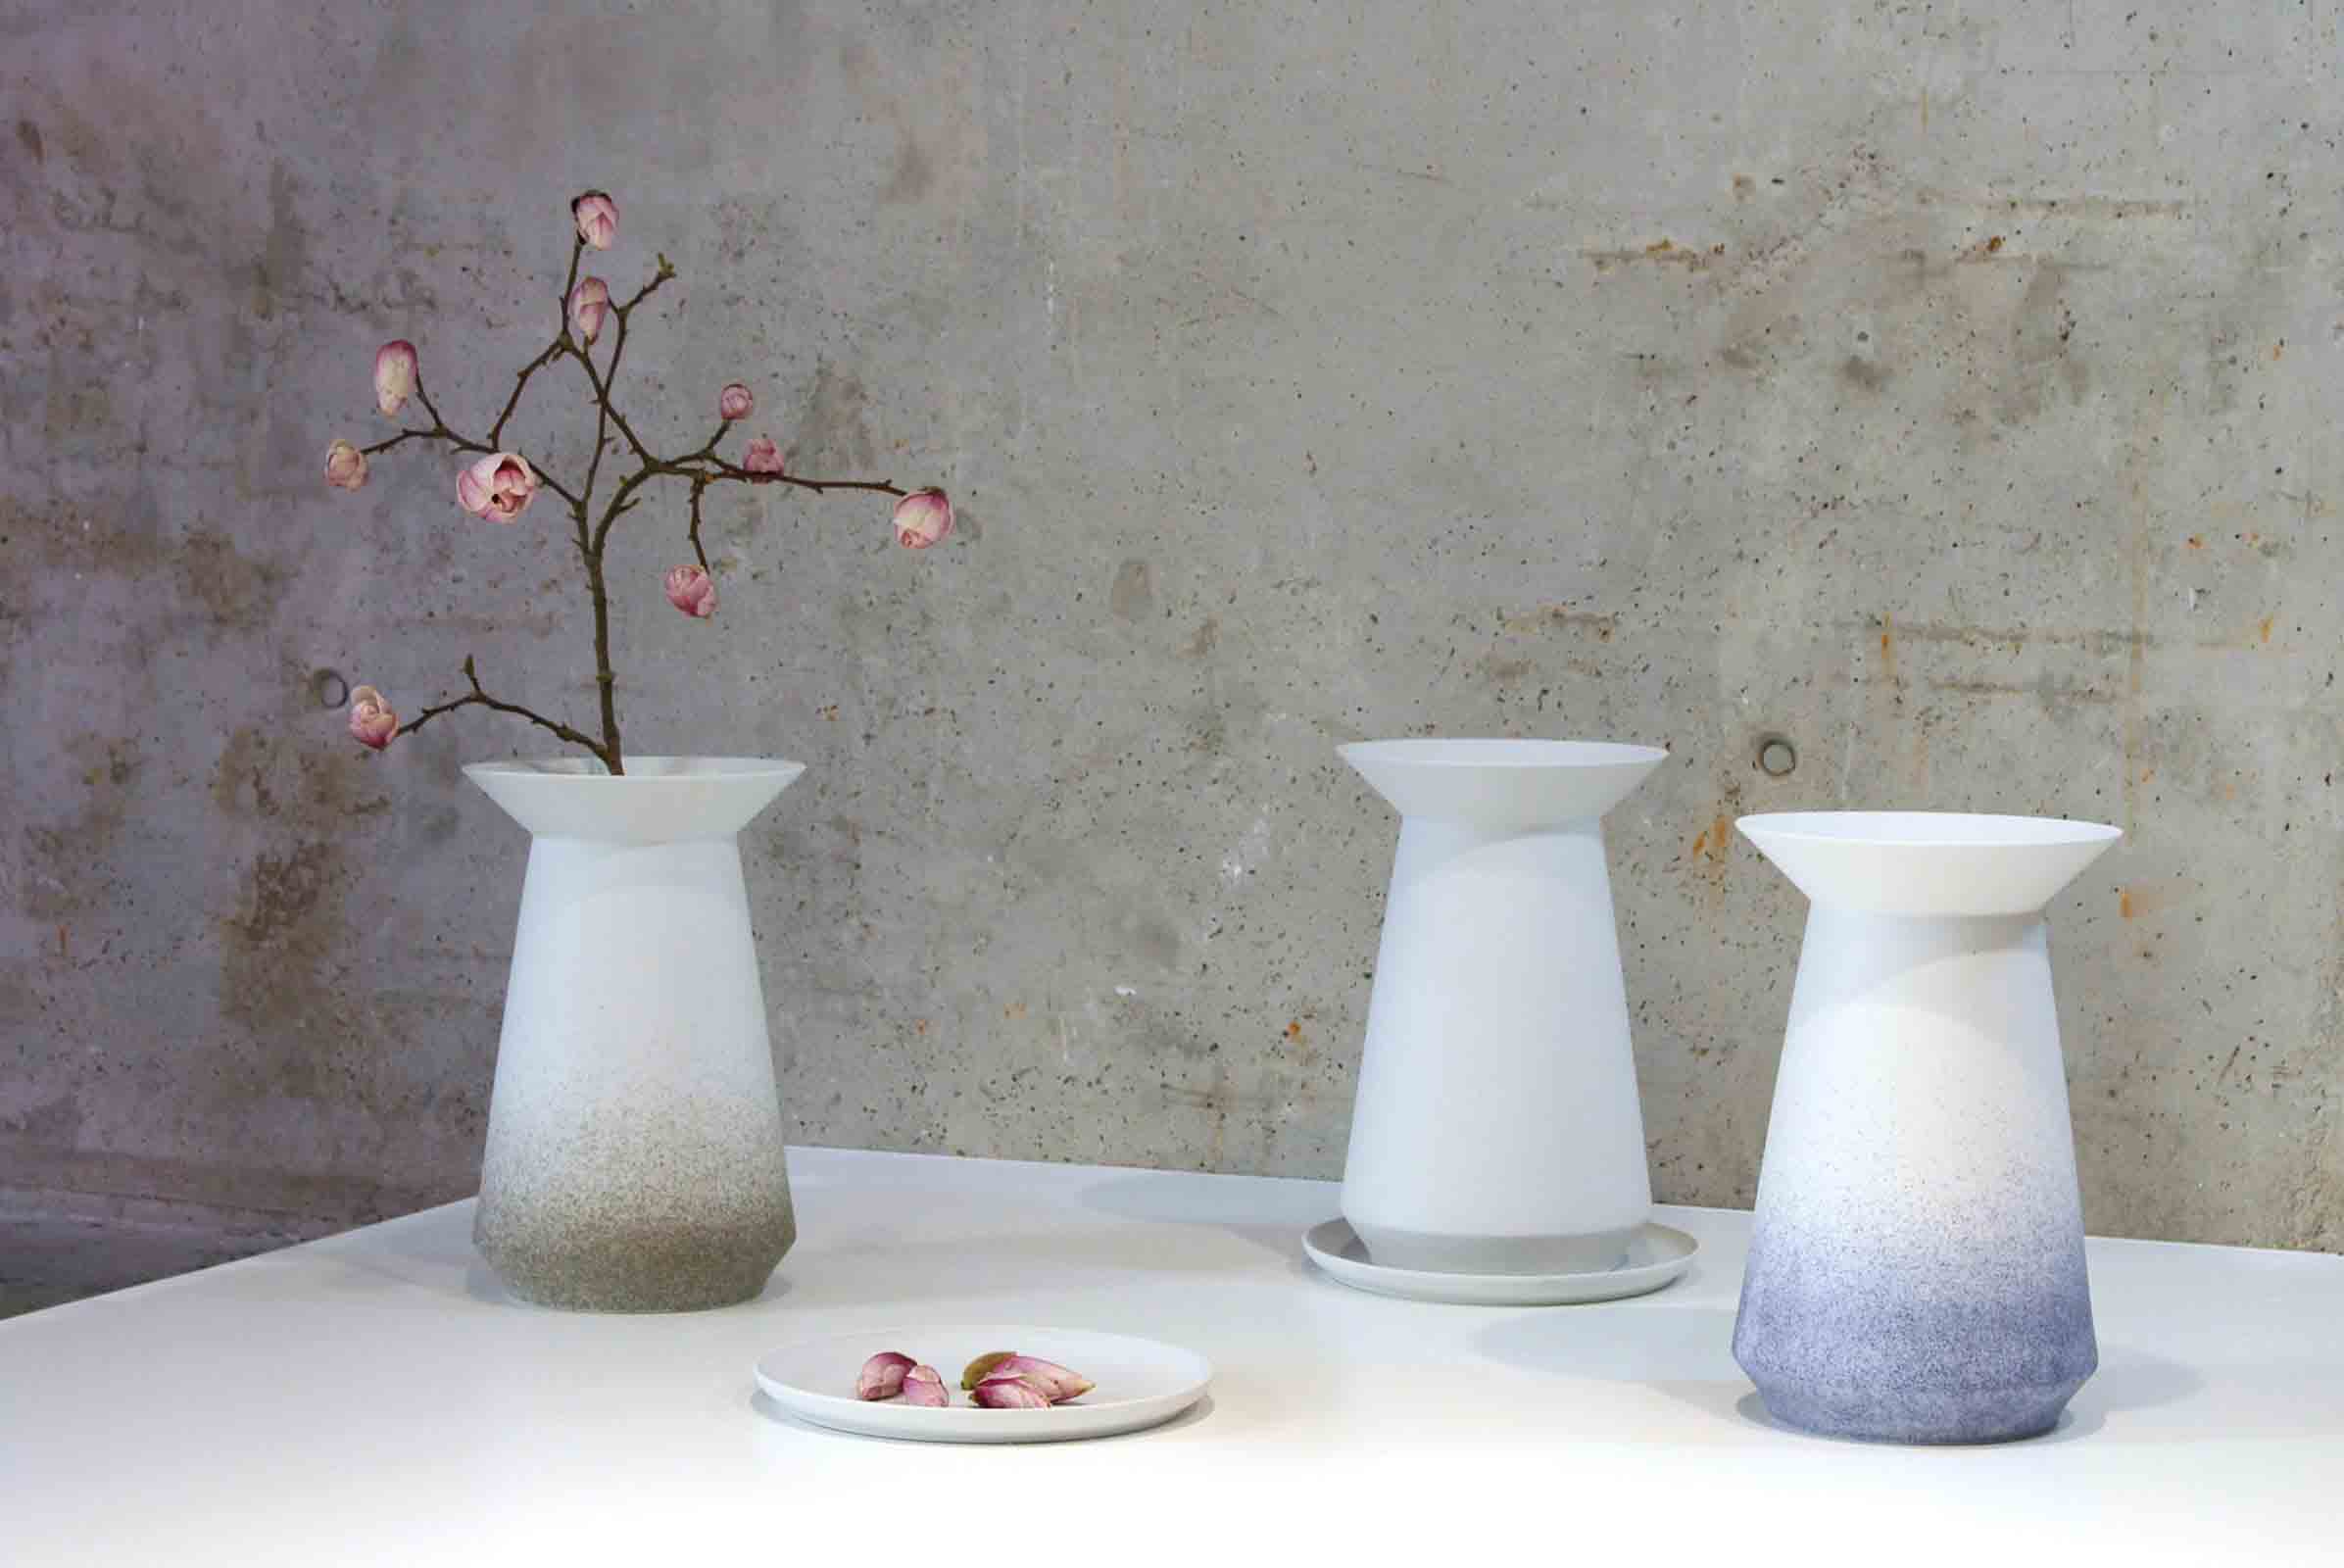 ‘Parasol’ ceramics designed by Designstudio speziell for Pulpo